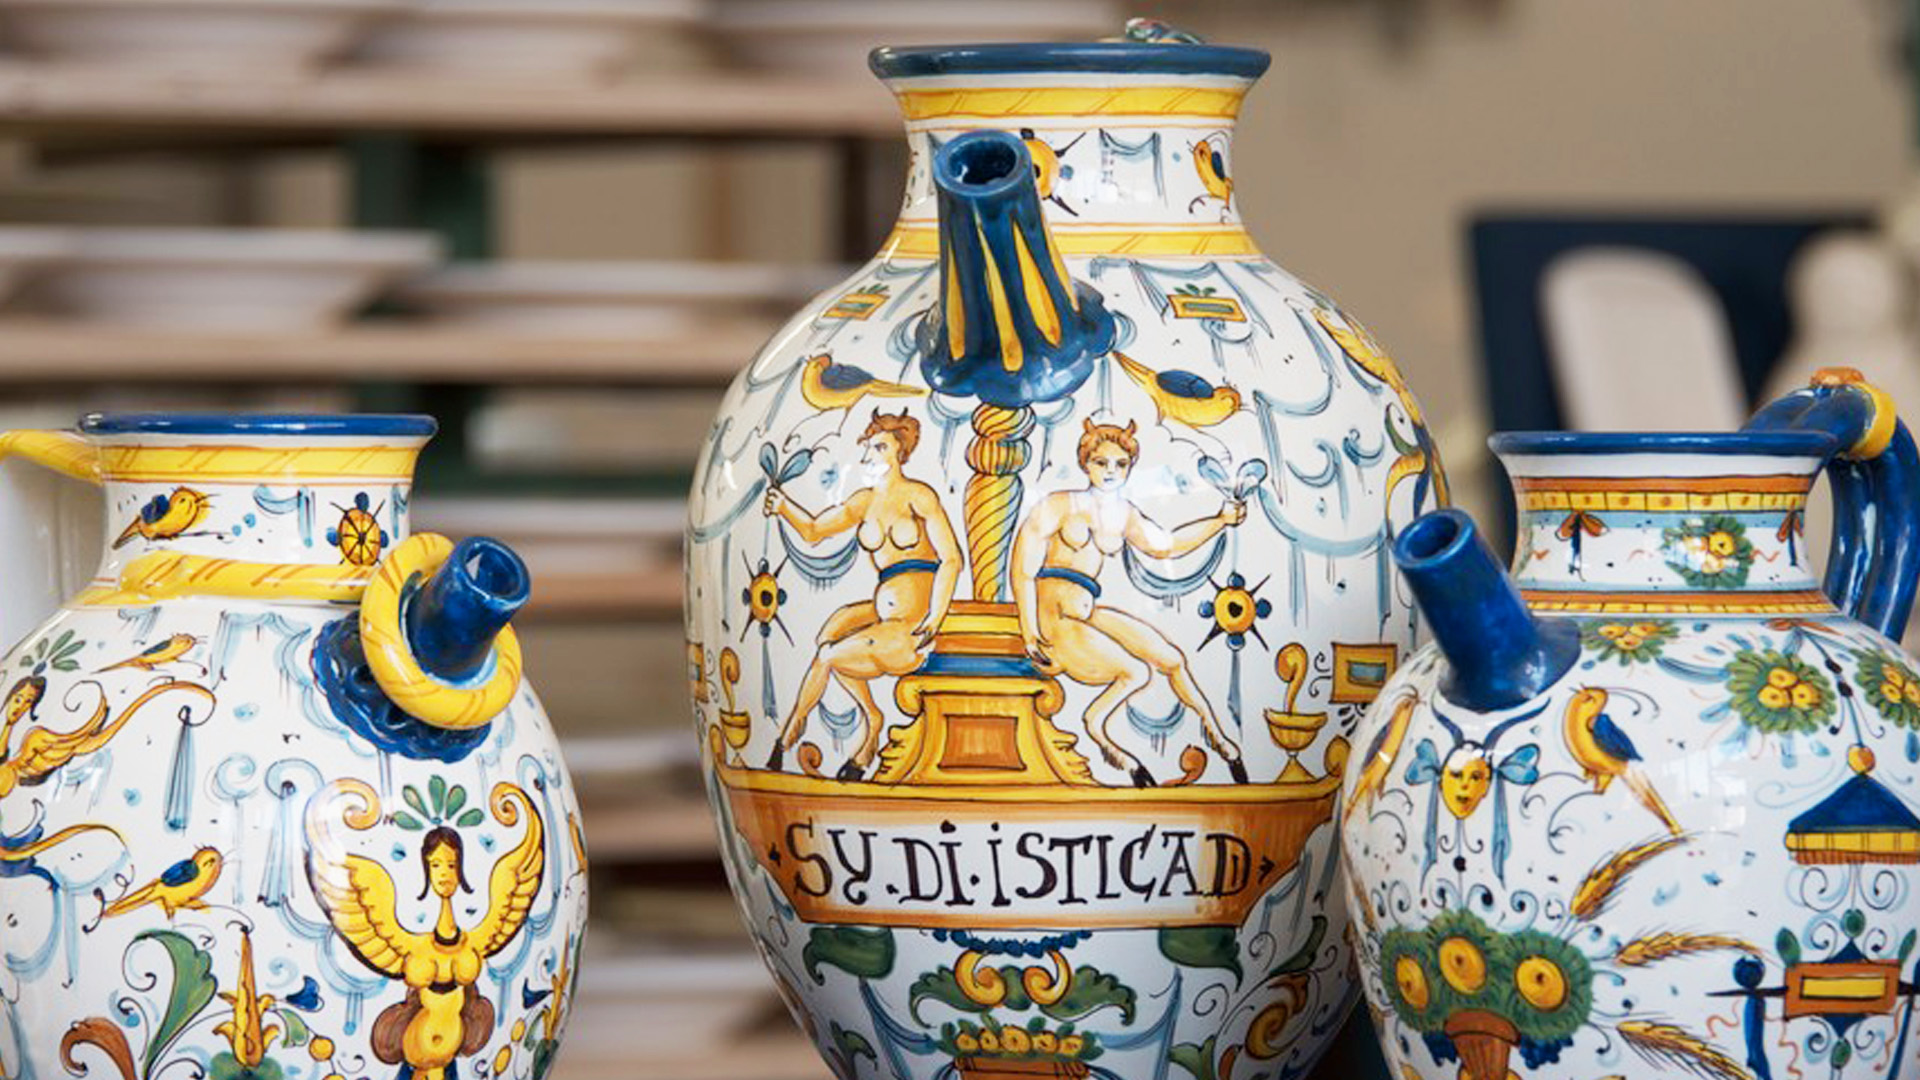 Artigianato artistico tradizionale Toscana: ARTEX sviluppa e promuove.